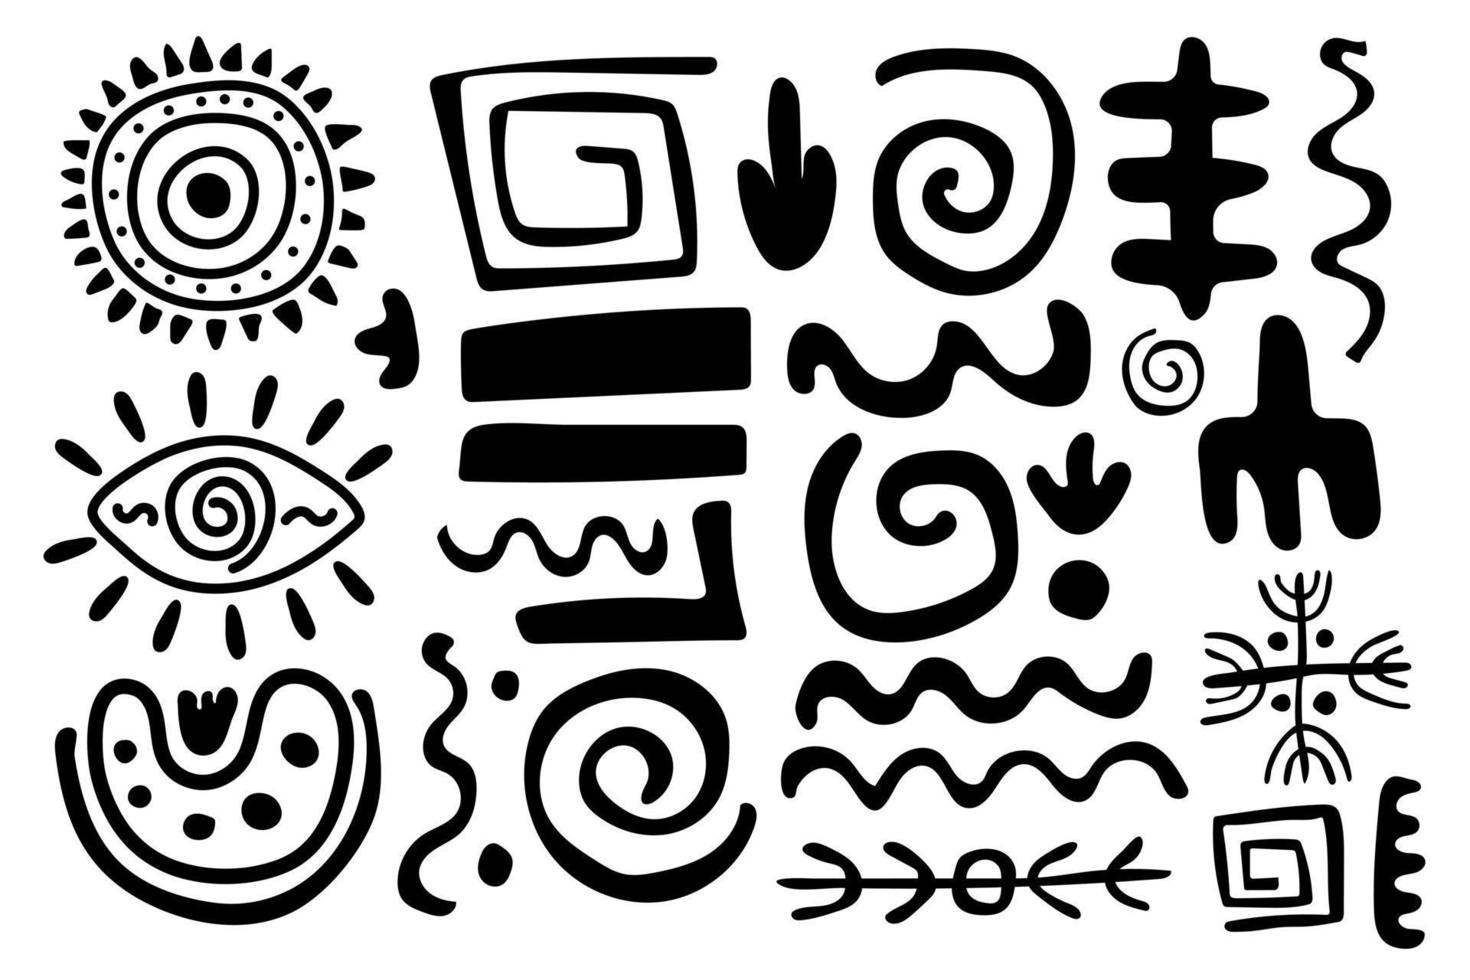 reeks primitief etnisch ornamenten, rotstekeningen. pijlen, lijnen, spiralen, cirkels. patronen, tekeningen van oude stam, steen leeftijd. ontwerp element voor textiel, papier, stoffen, ansichtkaart. vector illustratie